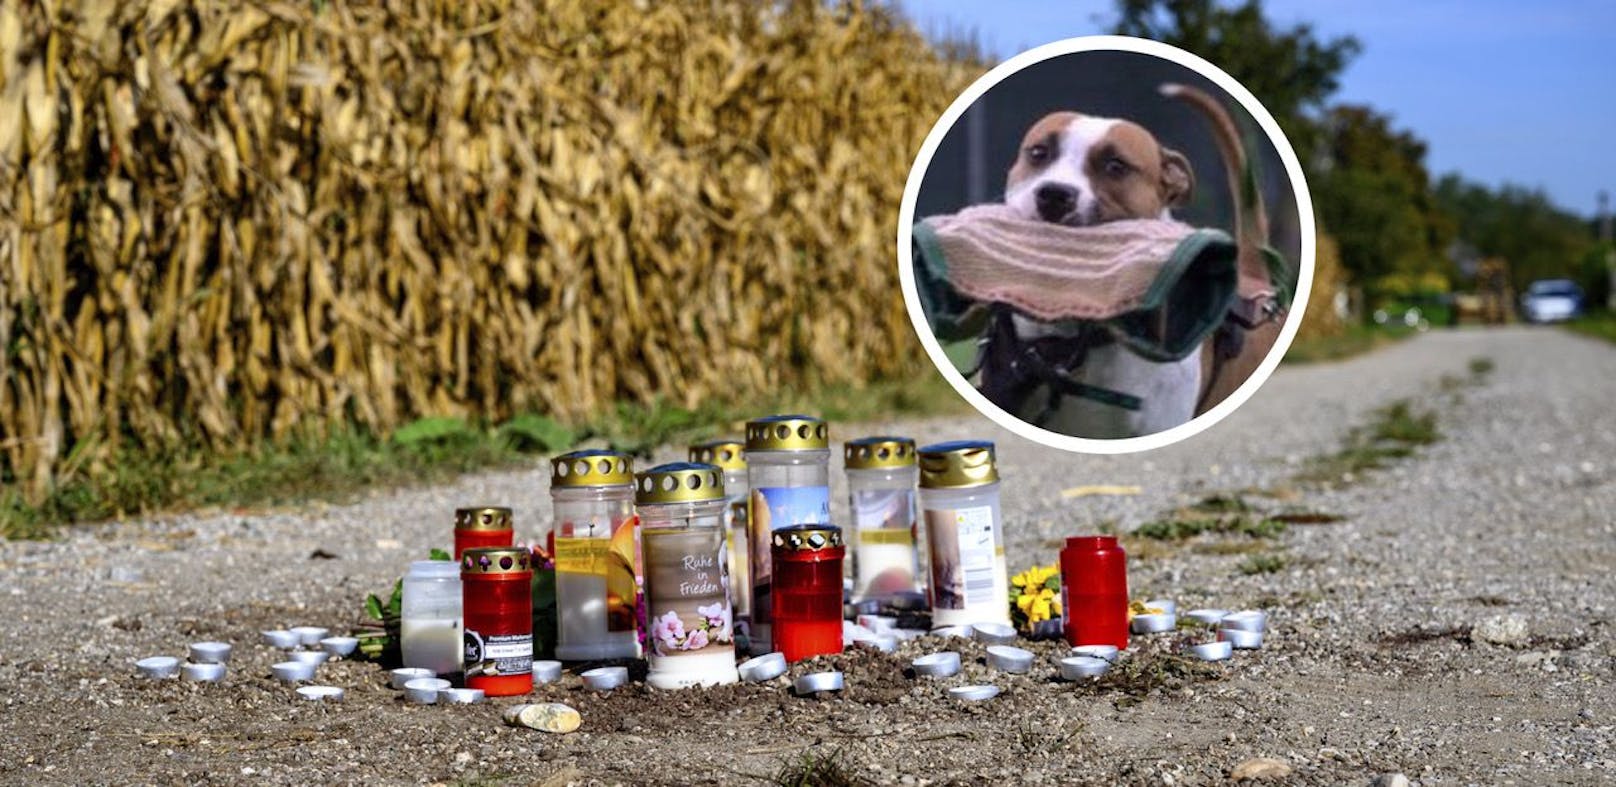 Tödliche Hundeattacke – Opfer (60) verblutete sofort